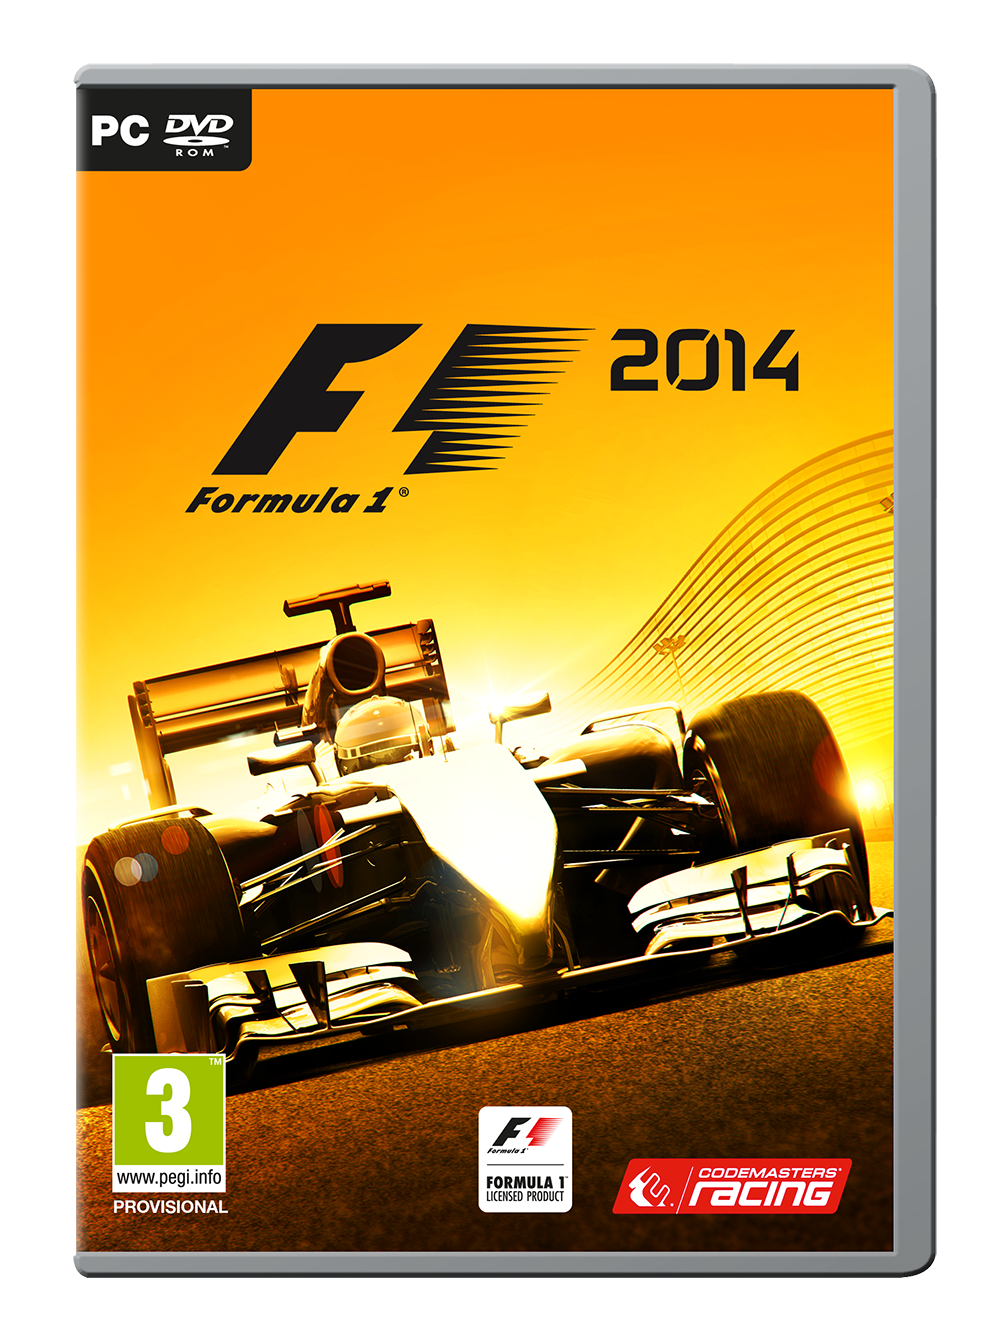 F1 2014, un nuovo trailer disponibile da oggi